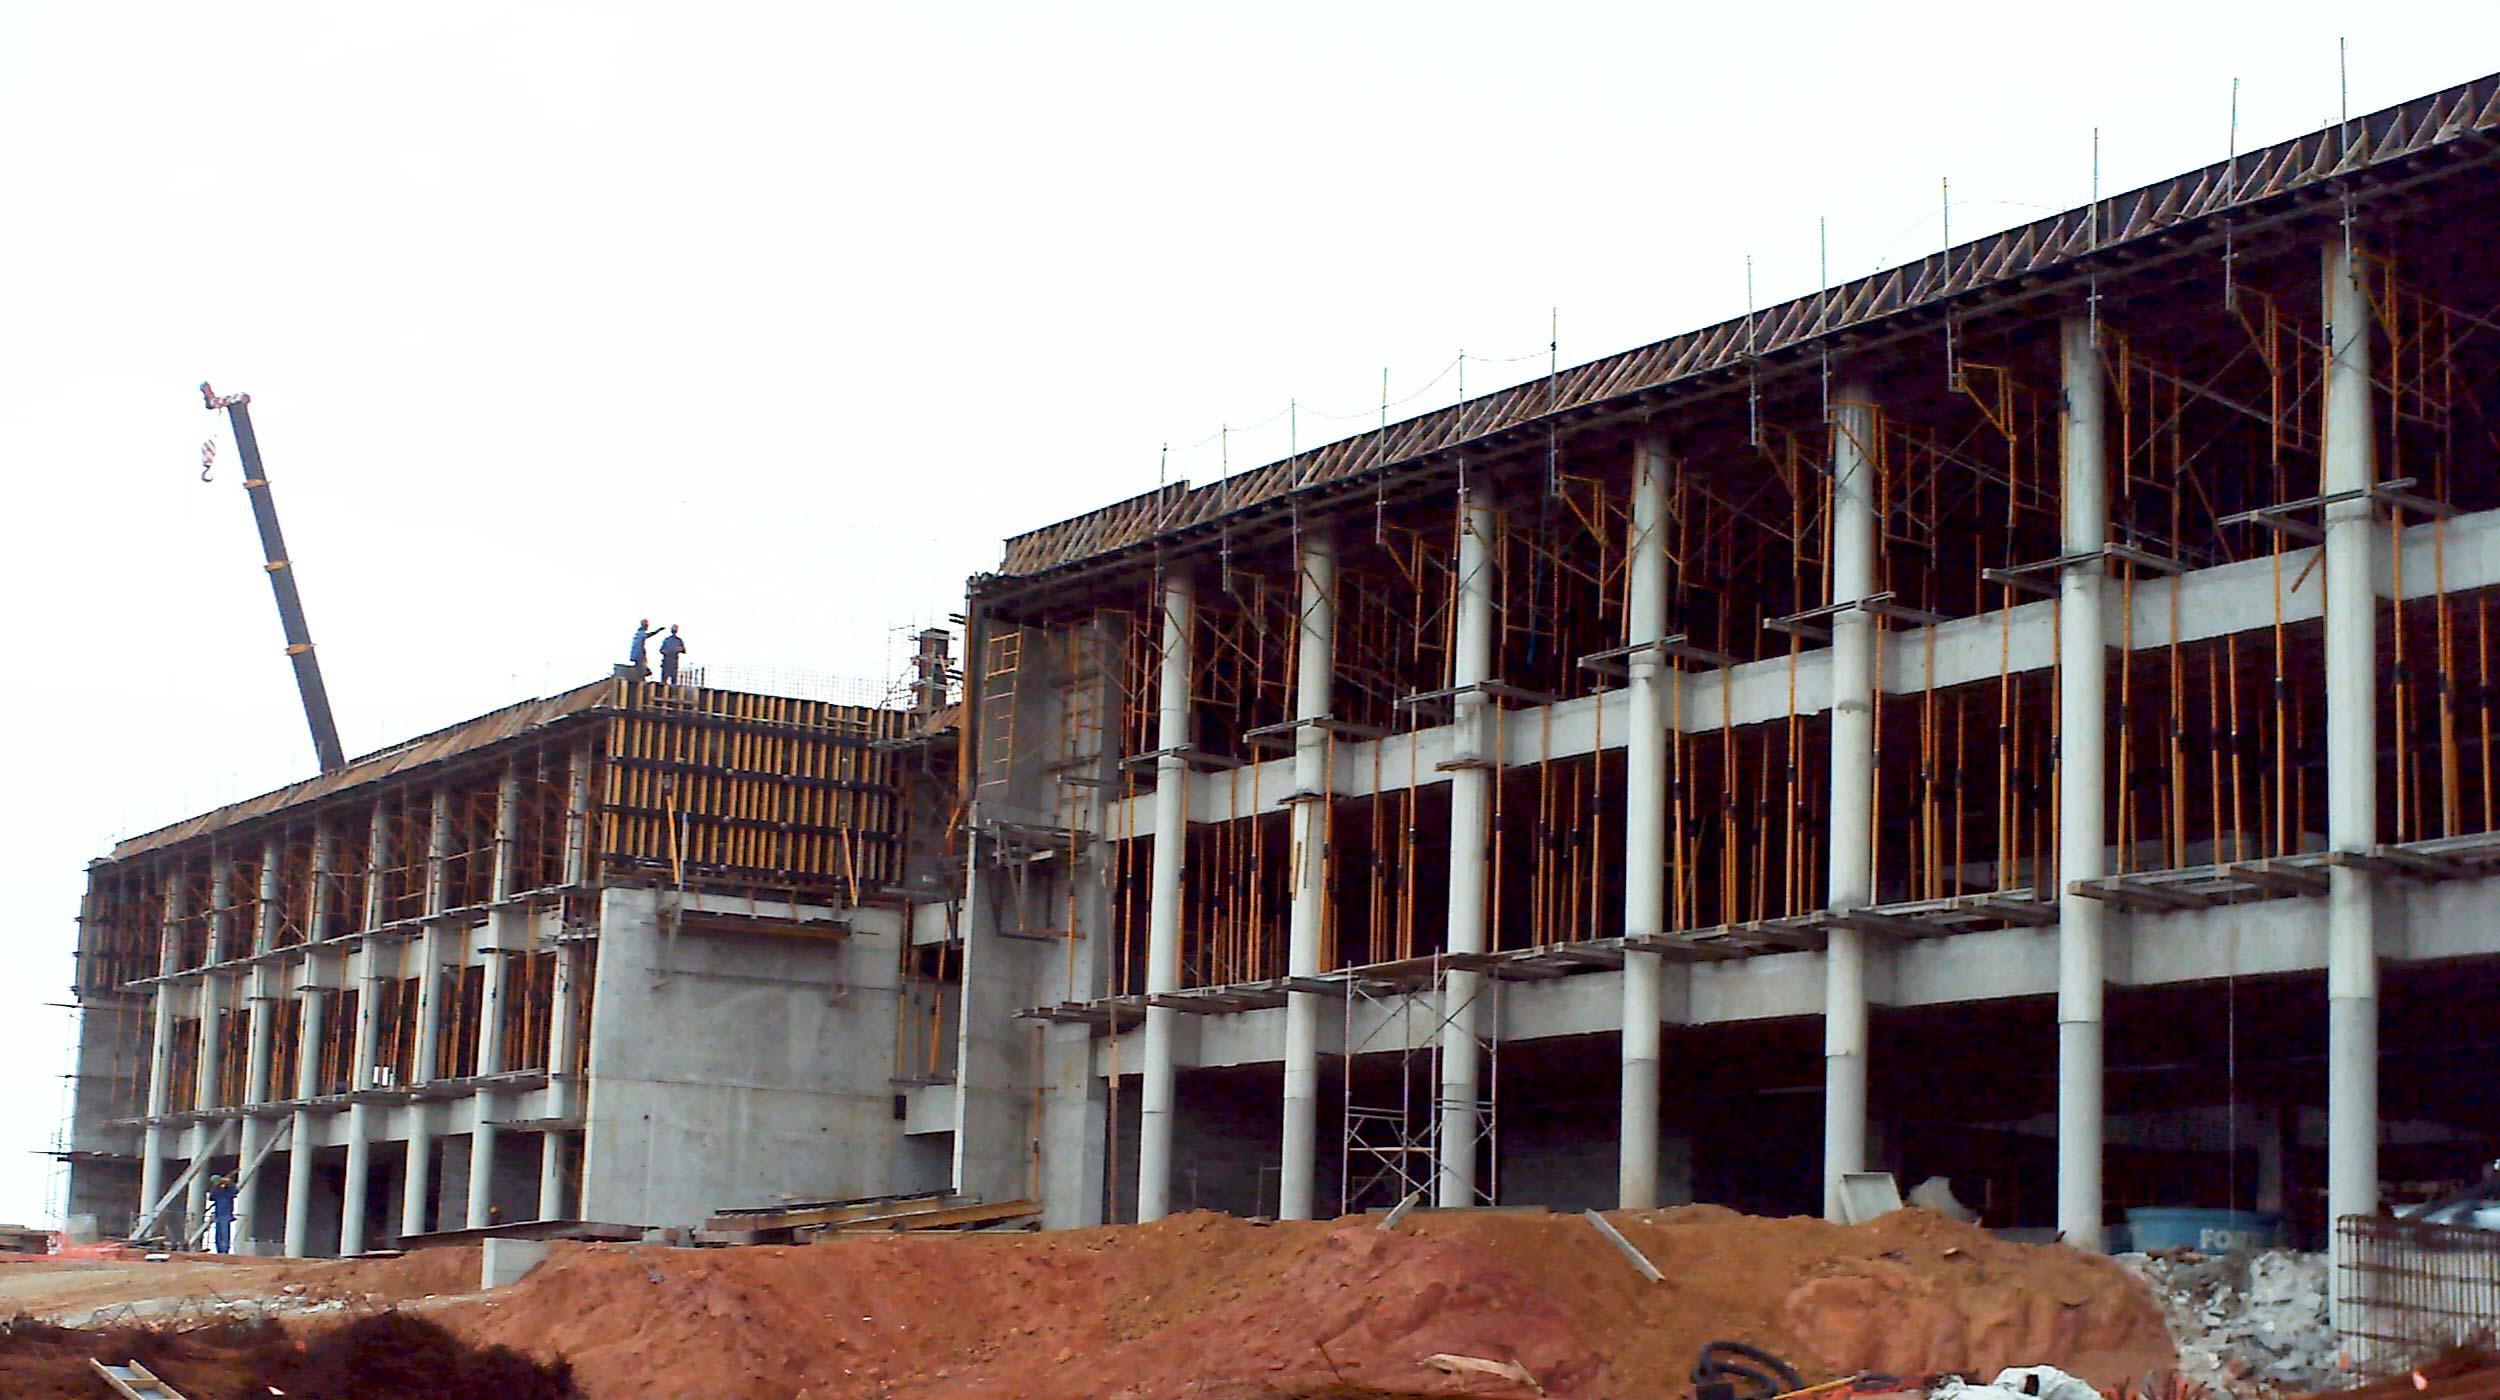 La nueva sede de las instalaciones industriales de Schlumberger en Brasil destaca de su entorno por su imponente estructura de 2.500 m² y muros de 16 m de altura en hormigón visto.